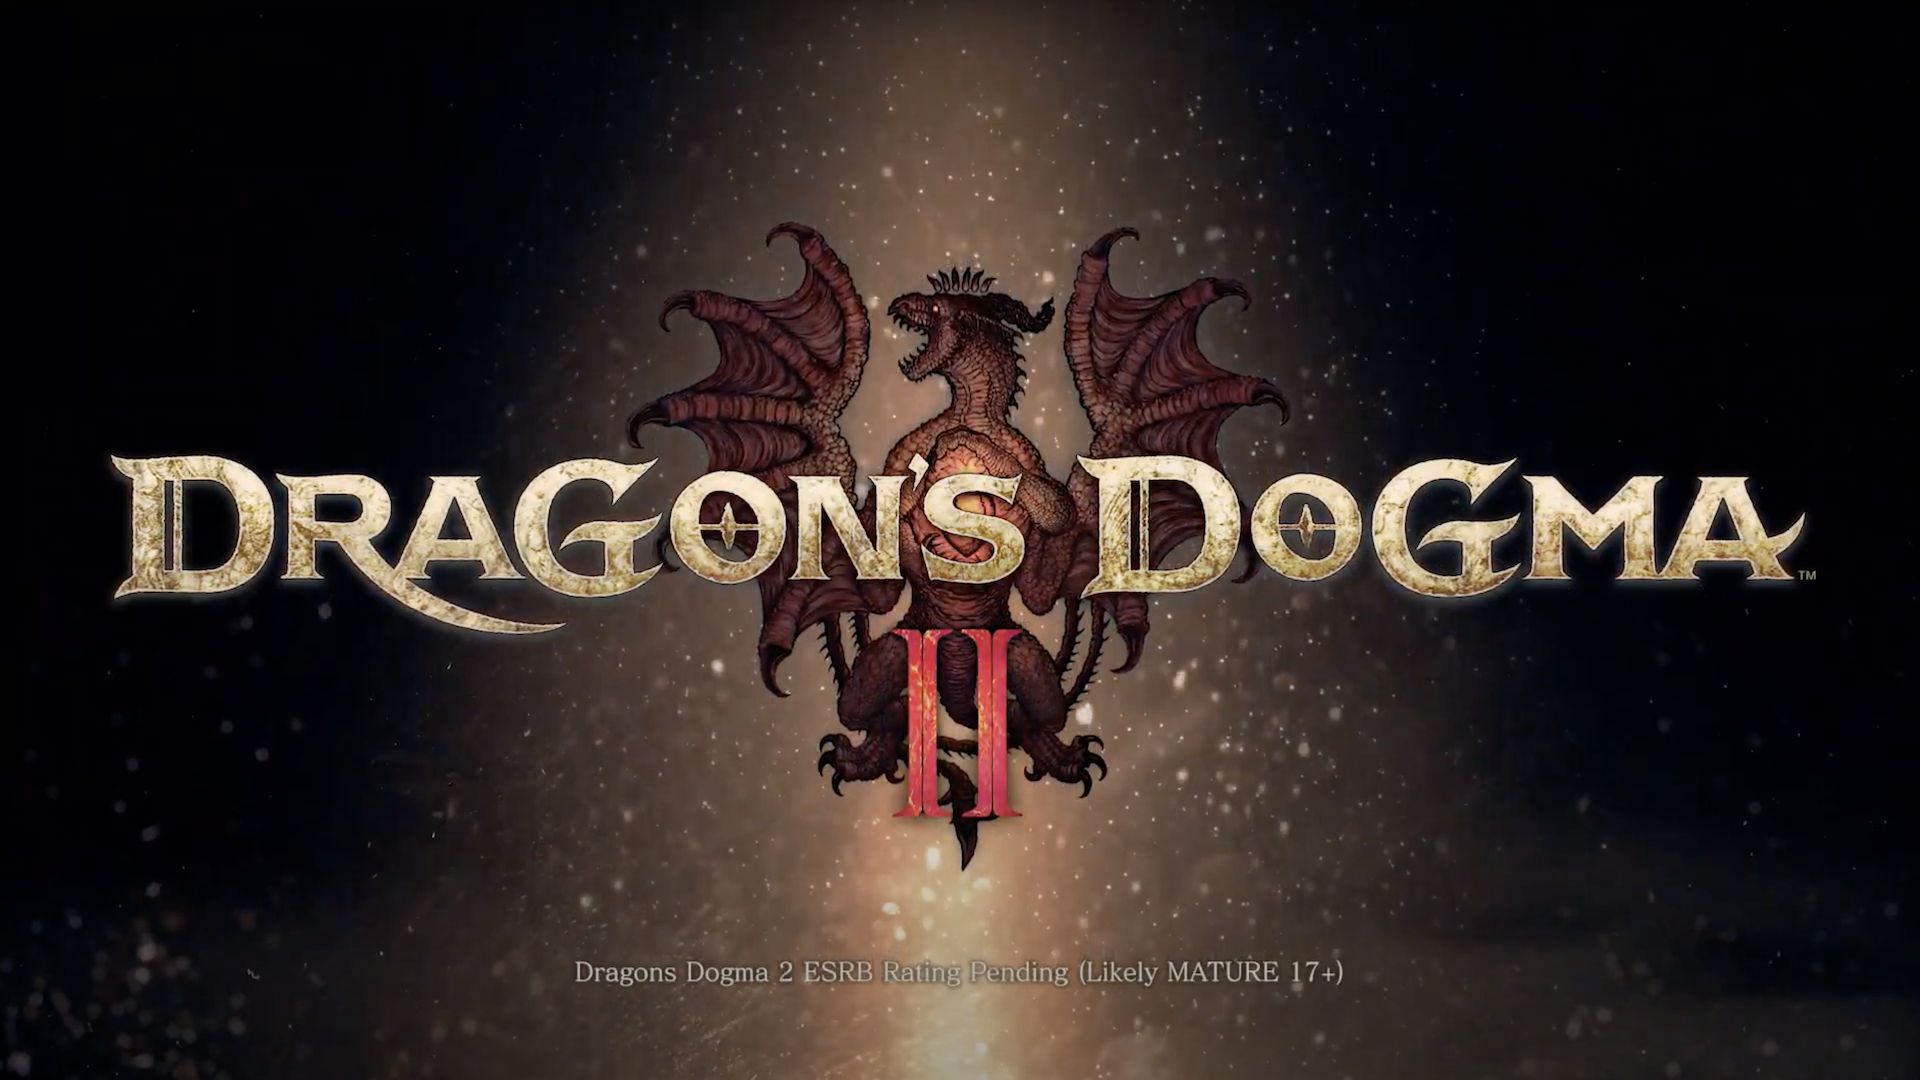 Ce personnage de Dragon's Dogma 2 terrifie les joueurs alors qu'il peut leur offrir de très bonnes récompenses